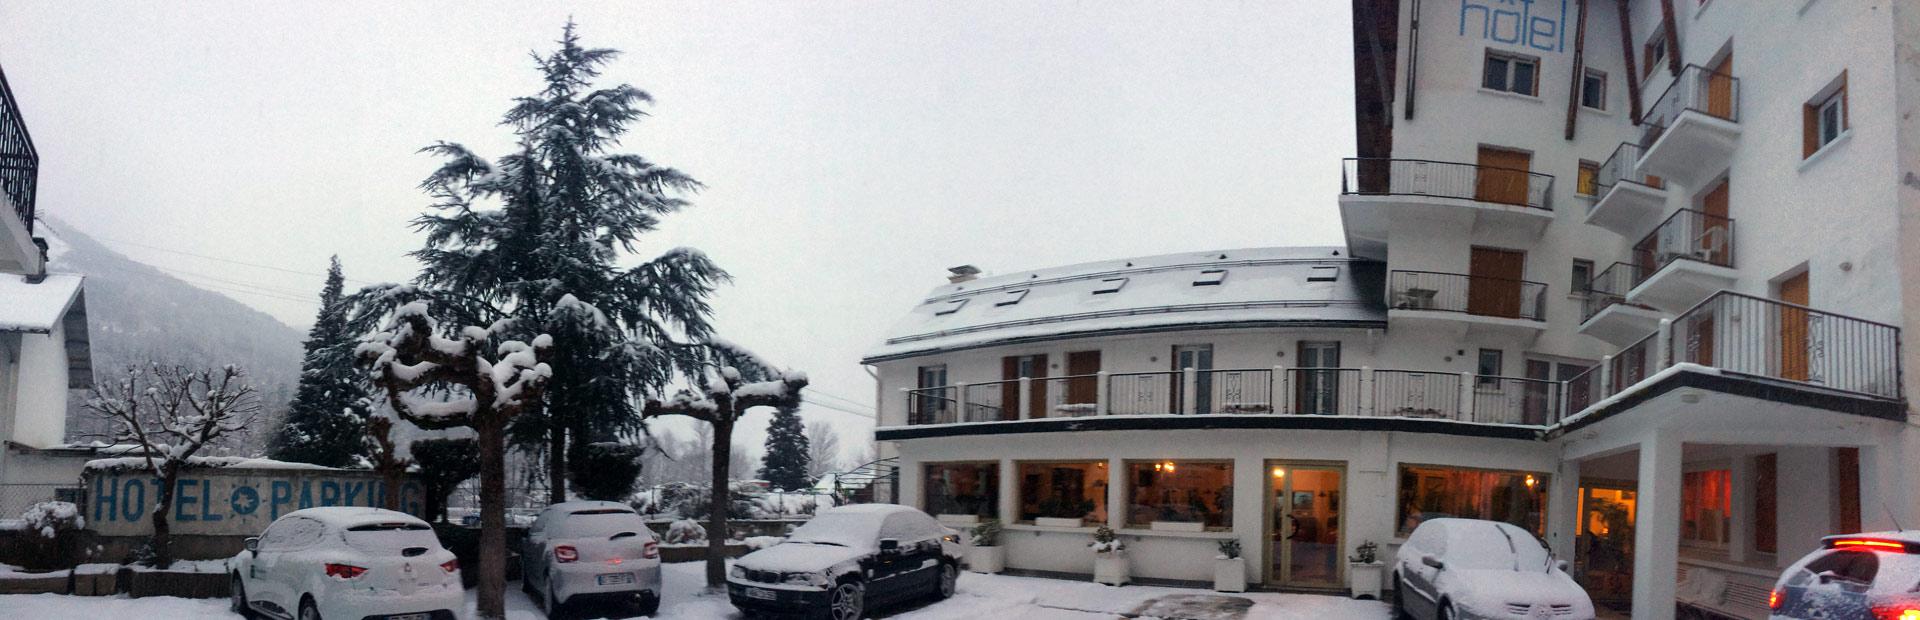 Hotel tout confort proches pistes de ski hôtel Orédon Saint Lary Hautes Pyrénées proche télécabine